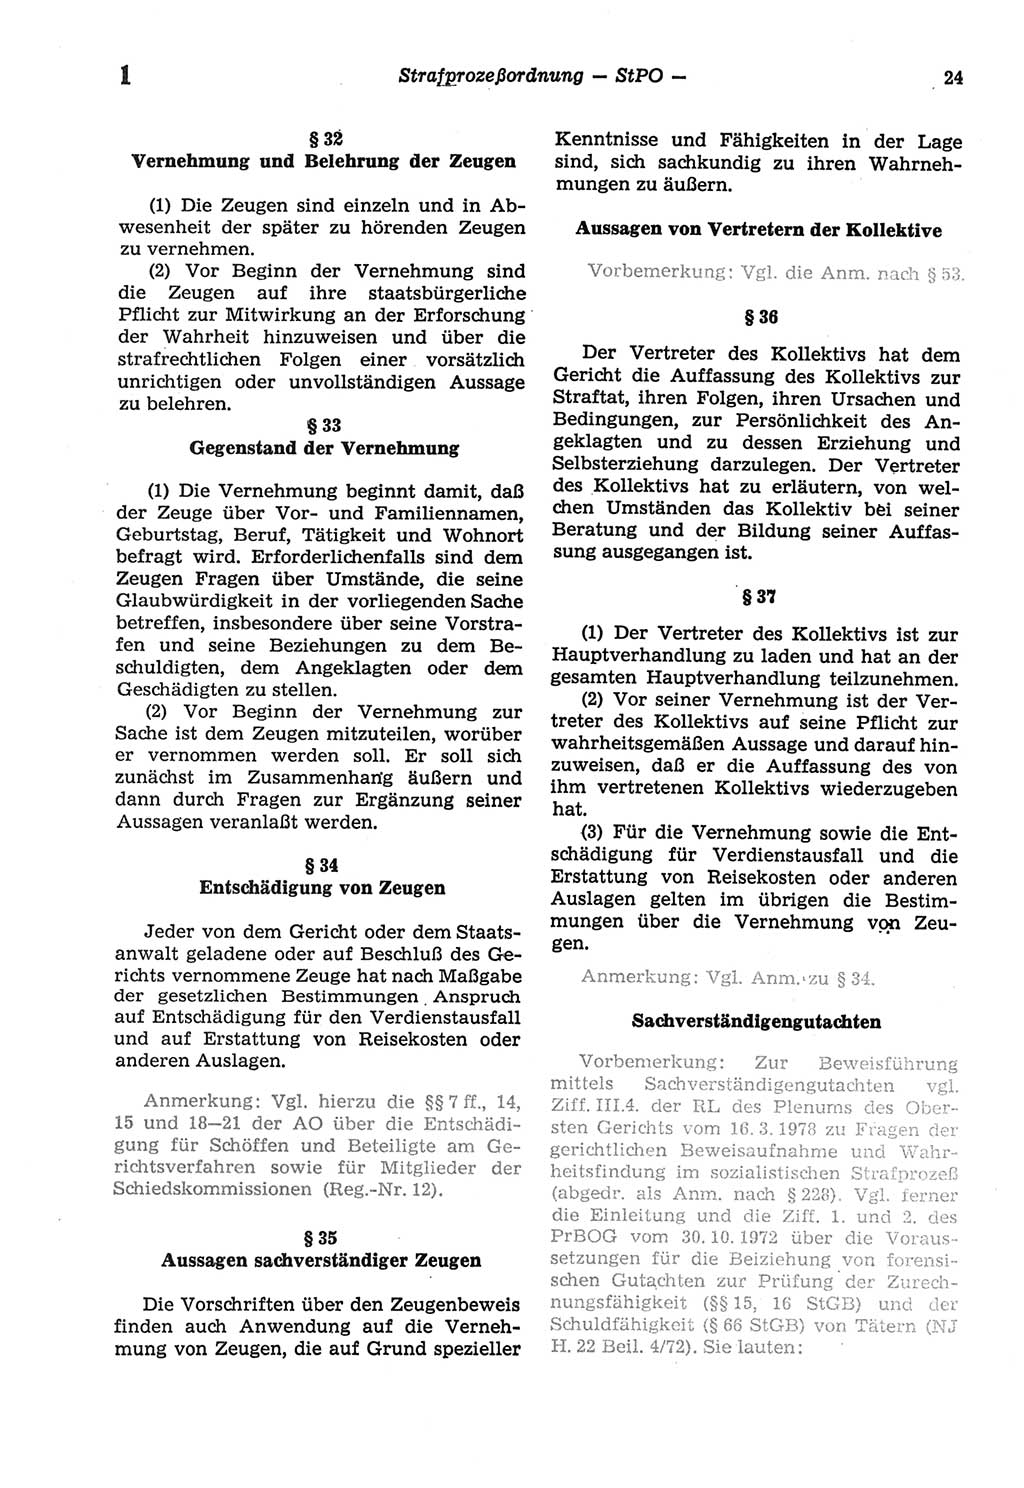 Strafprozeßordnung (StPO) der Deutschen Demokratischen Republik (DDR) sowie angrenzende Gesetze und Bestimmungen 1977, Seite 24 (StPO DDR Ges. Best. 1977, S. 24)